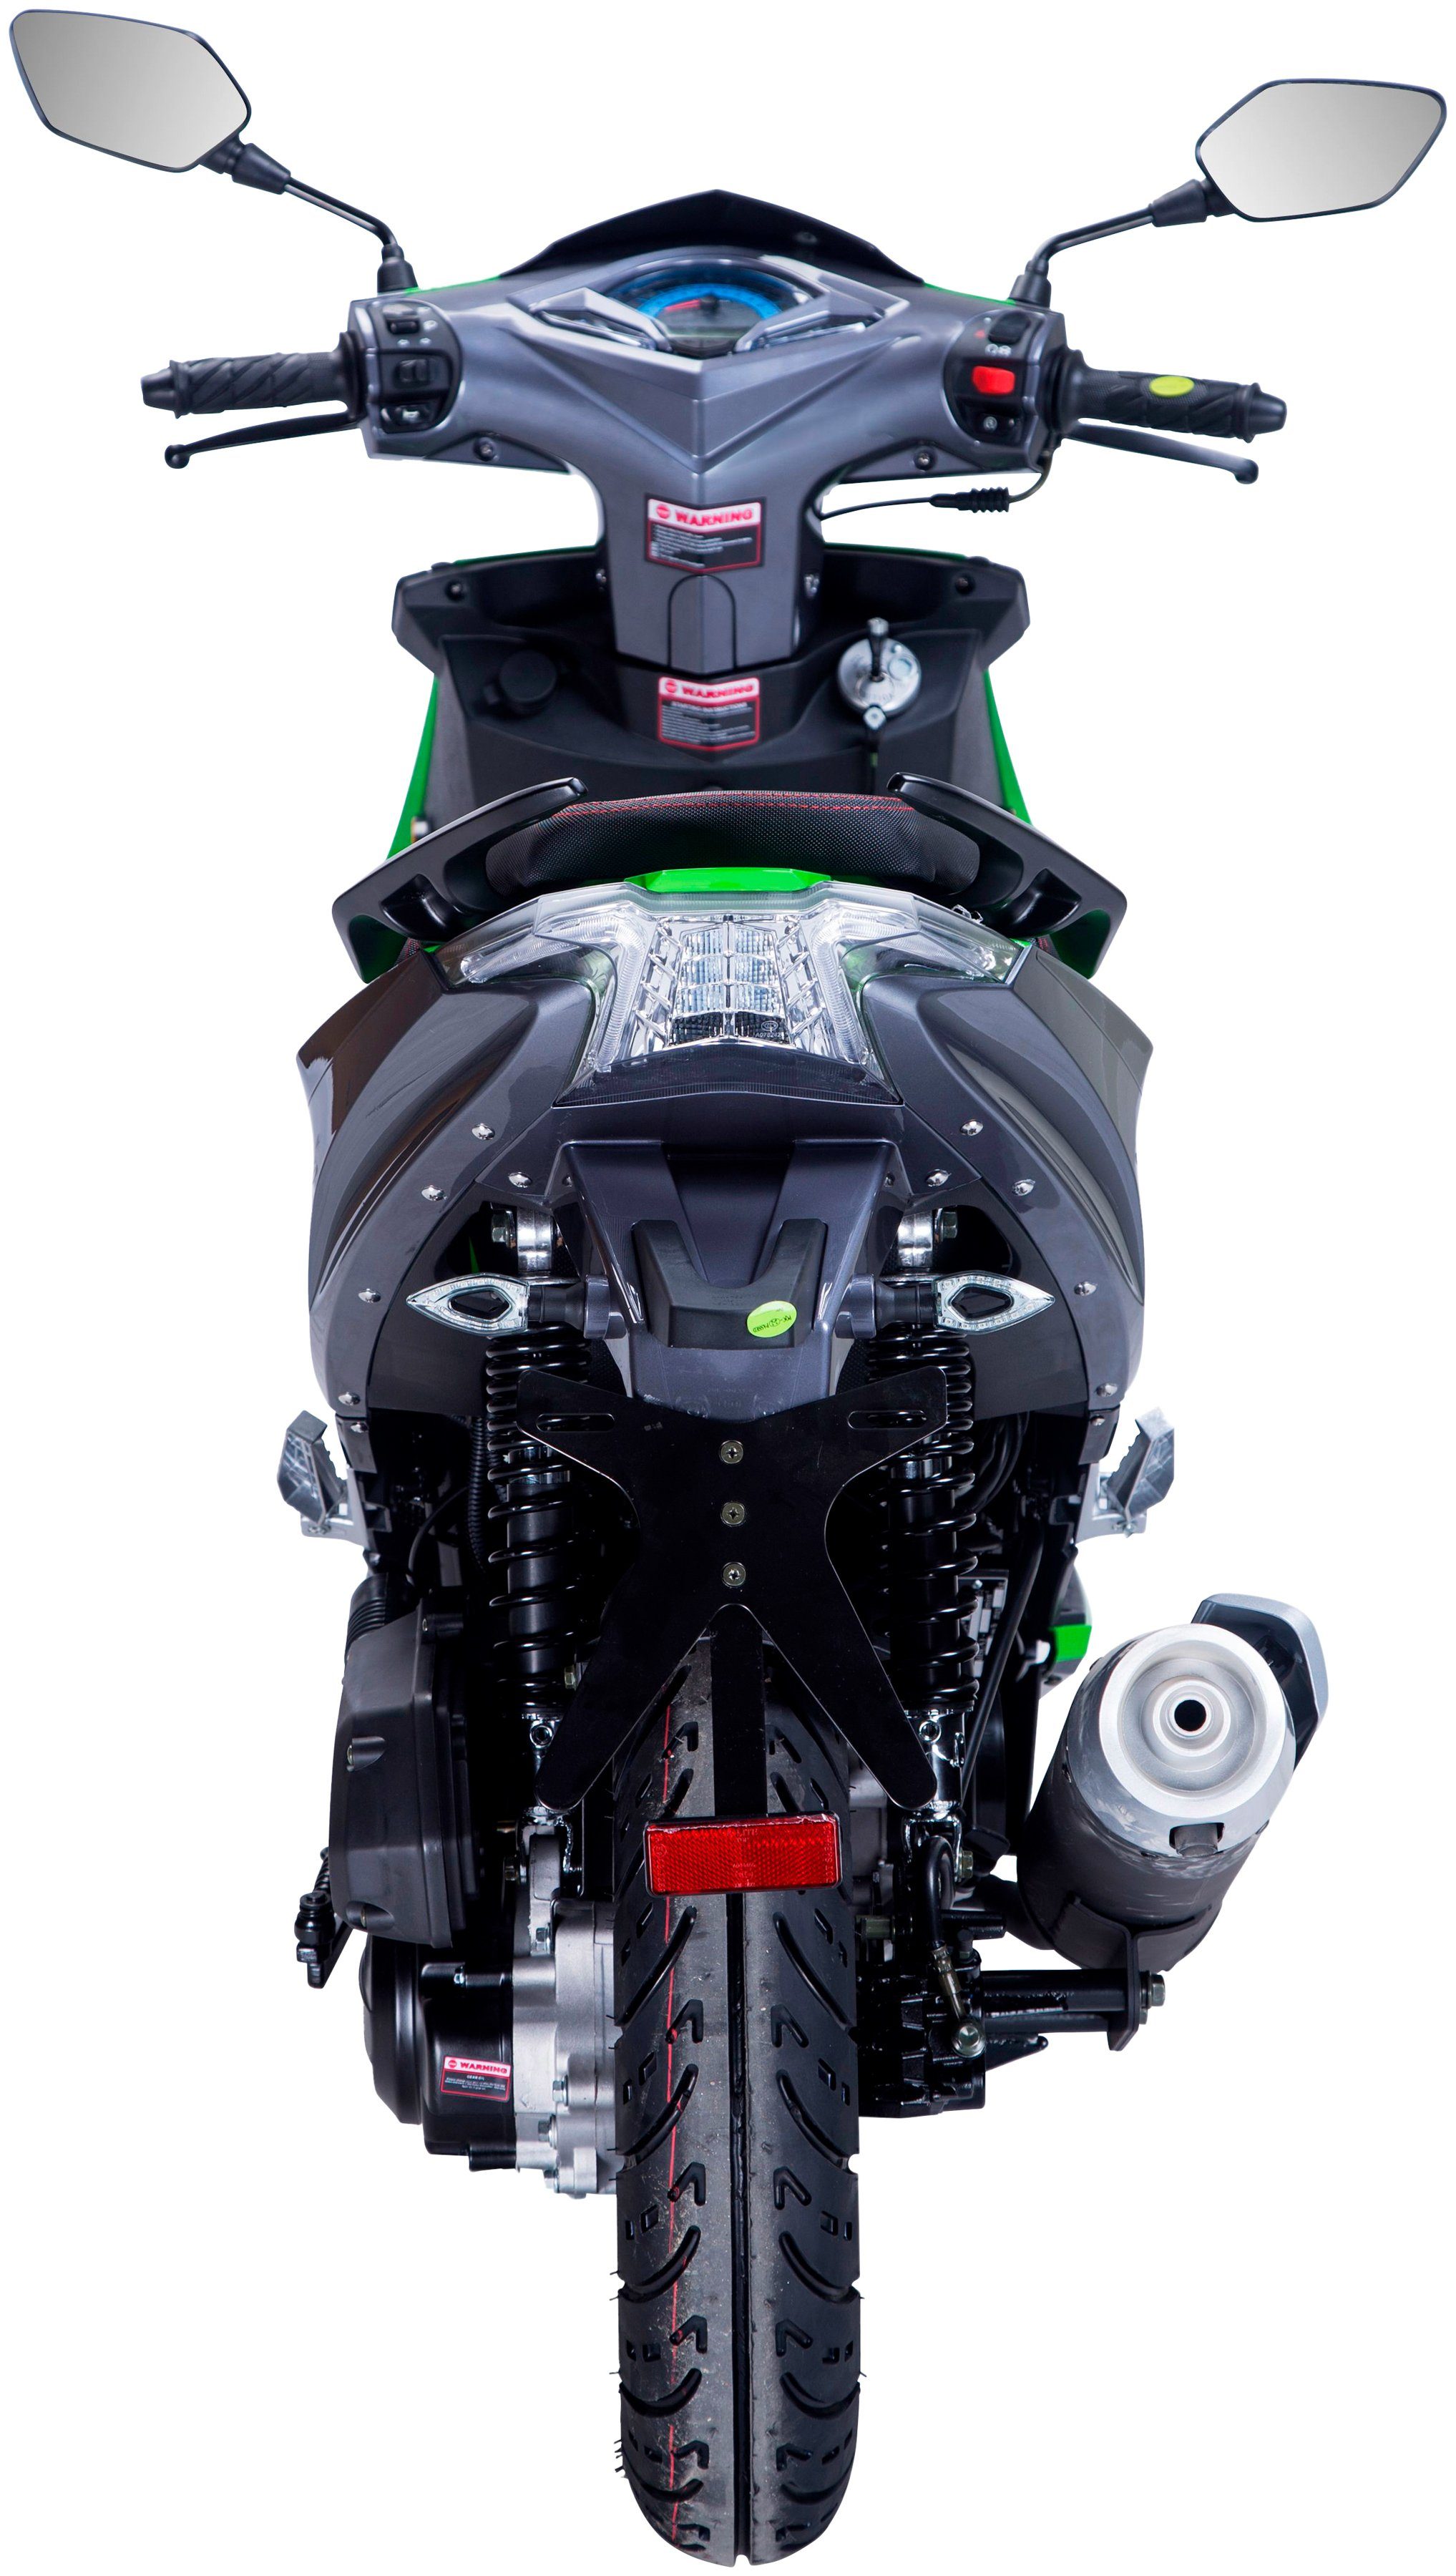 GT UNION Motorroller Striker, 50 Euro 5 45 ccm, schwarz/grün km/h